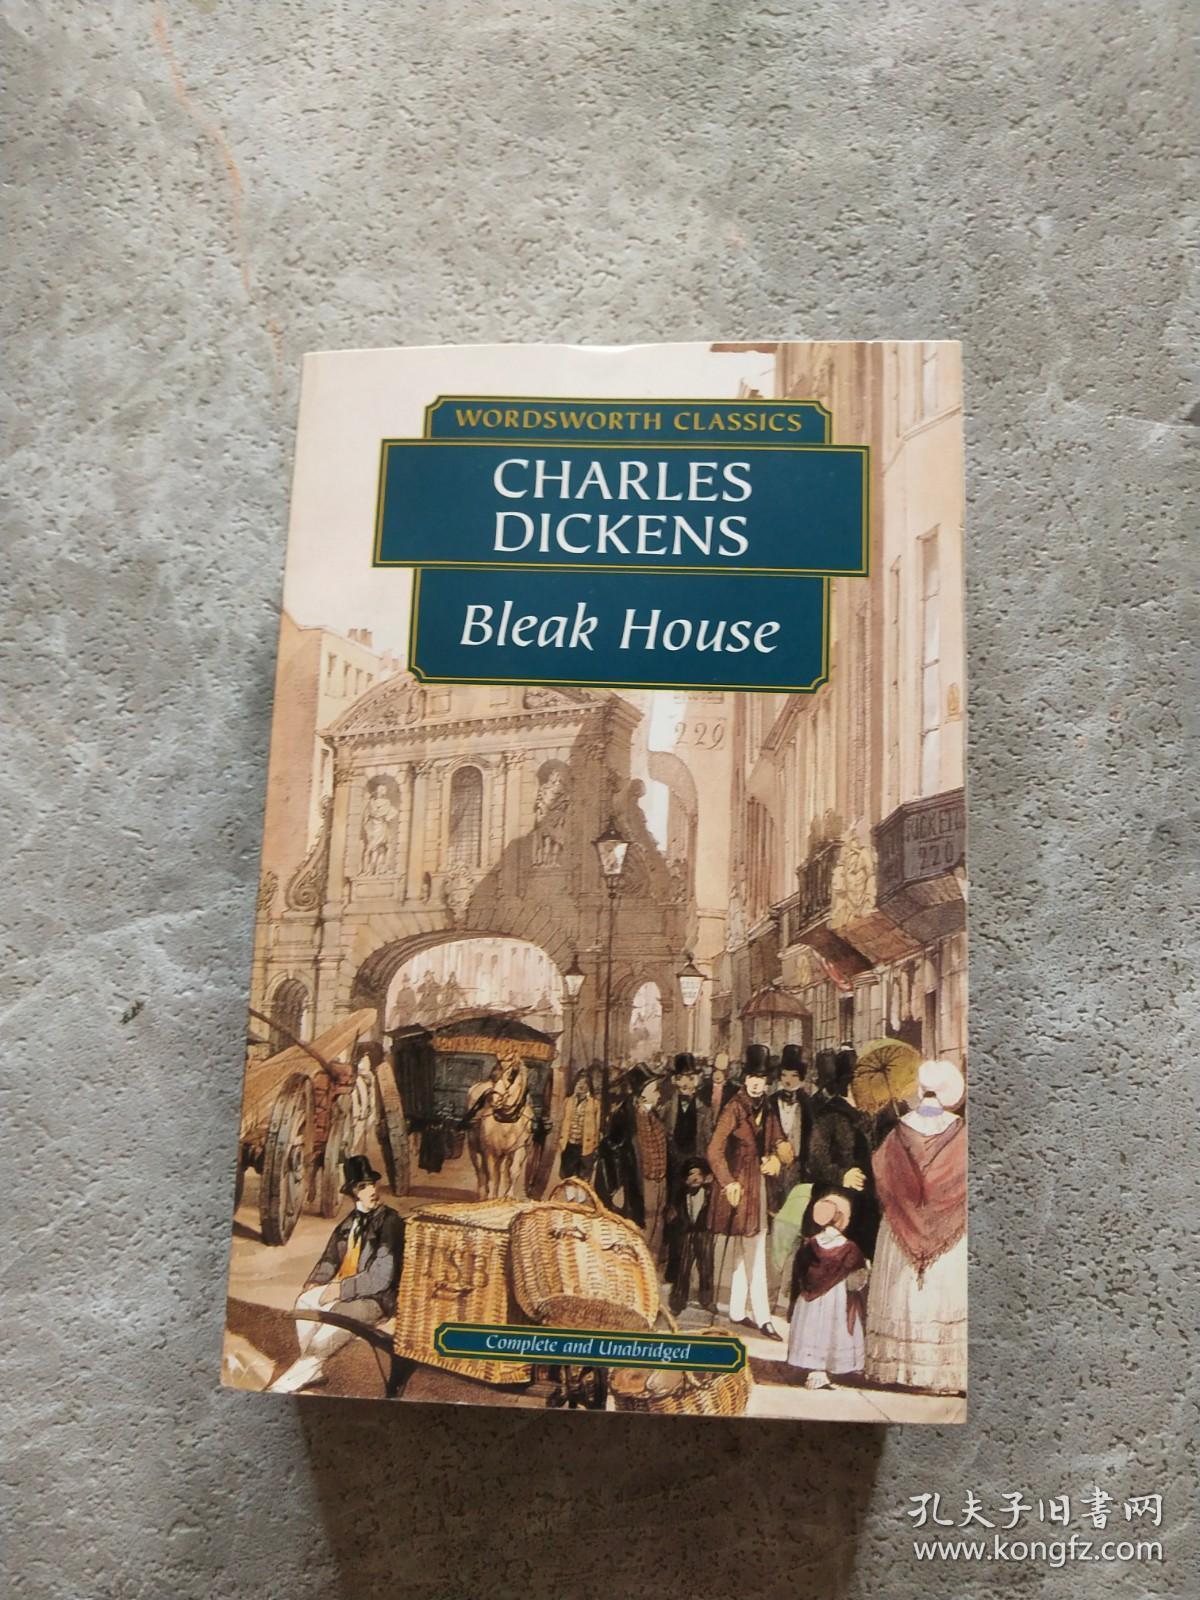 CHARLES DICKENS BICAK House